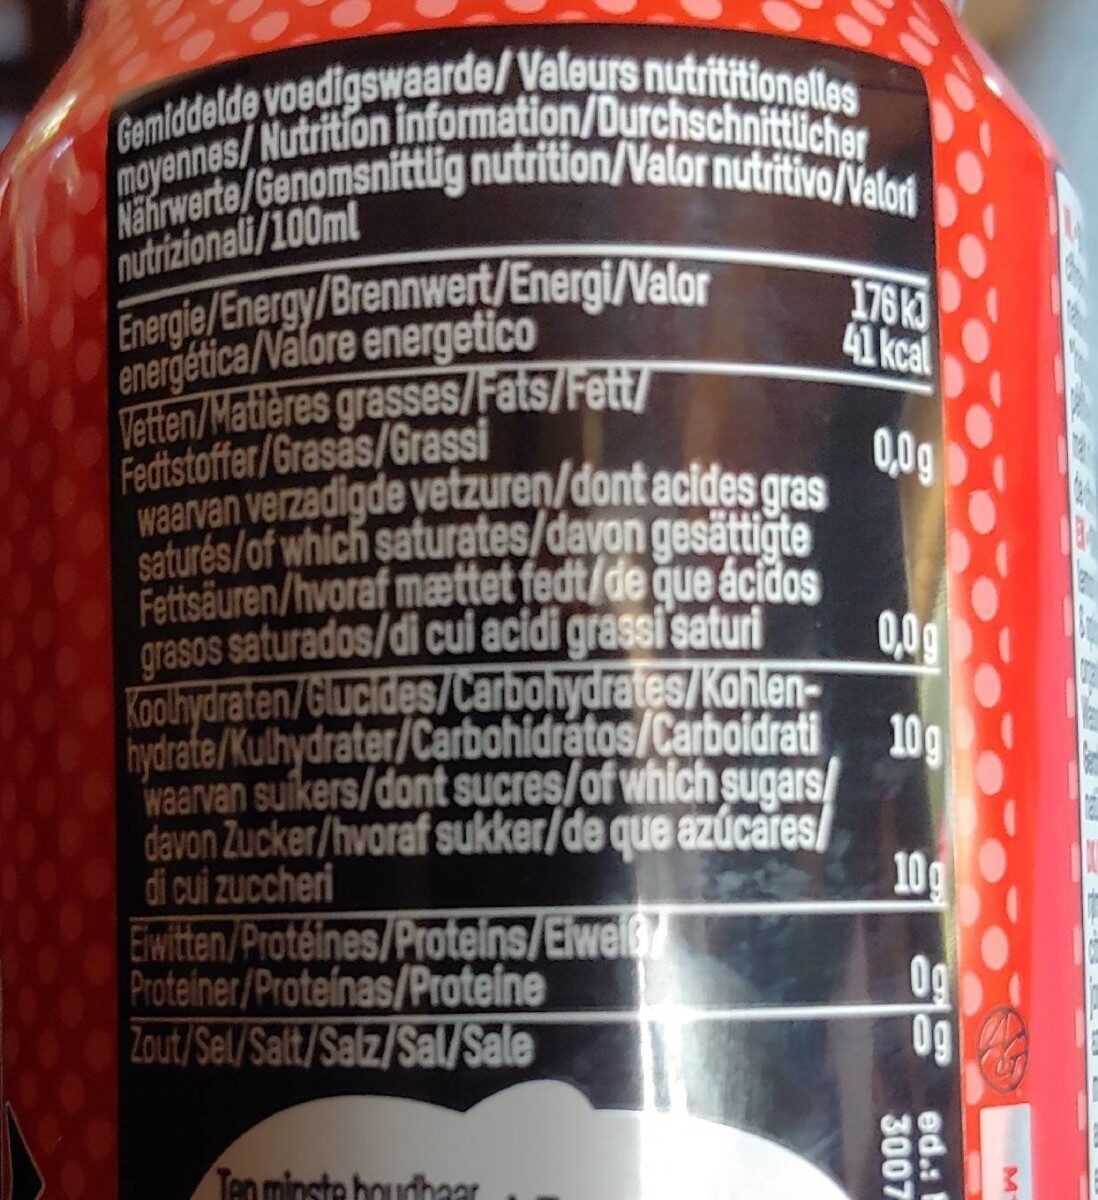 Cola - Tableau nutritionnel